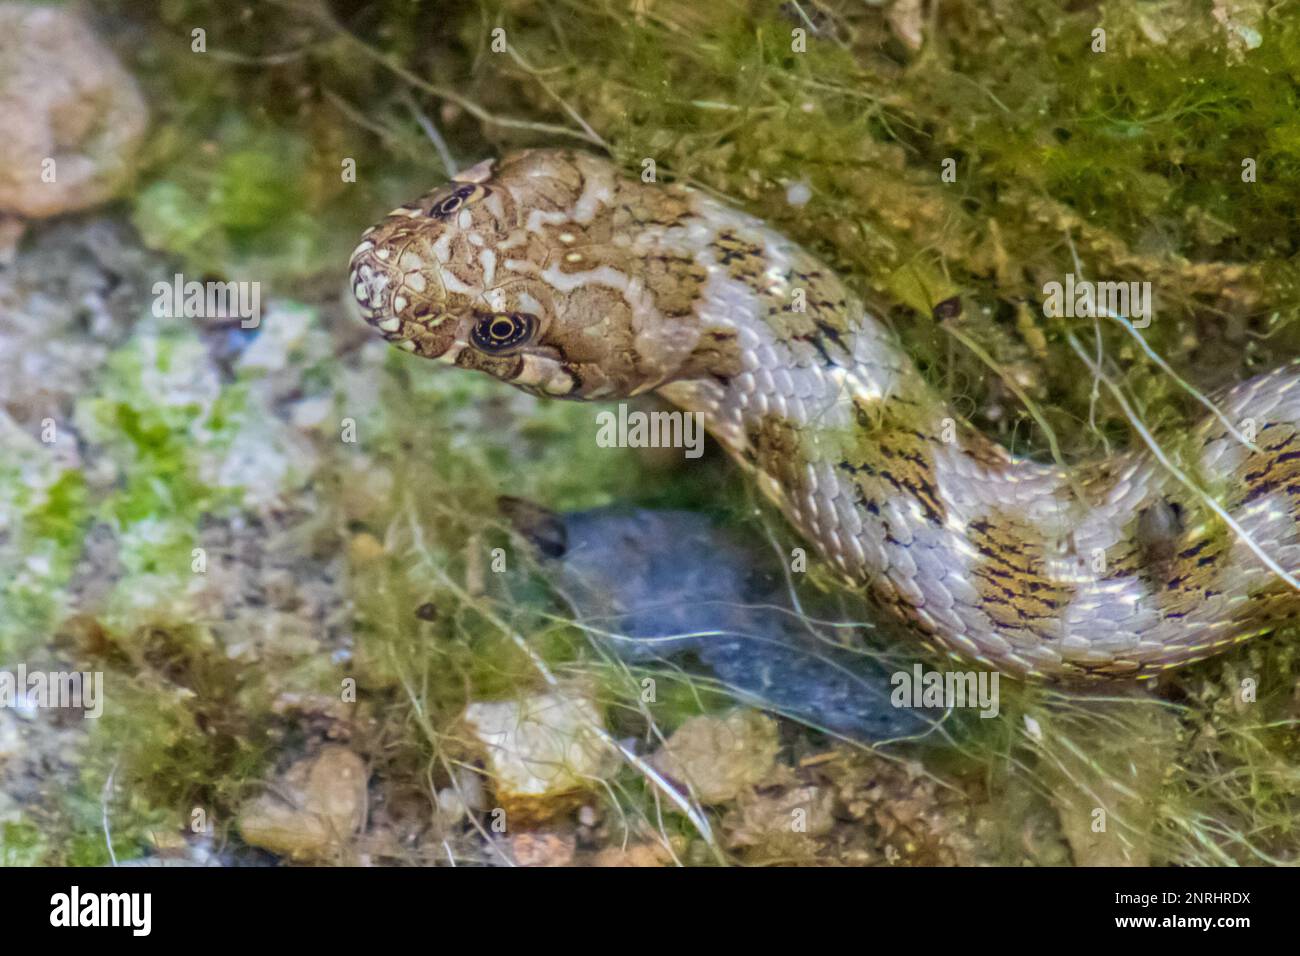 Natrix maura, serpent de Viperine avec sa tête hors de l'eau Banque D'Images